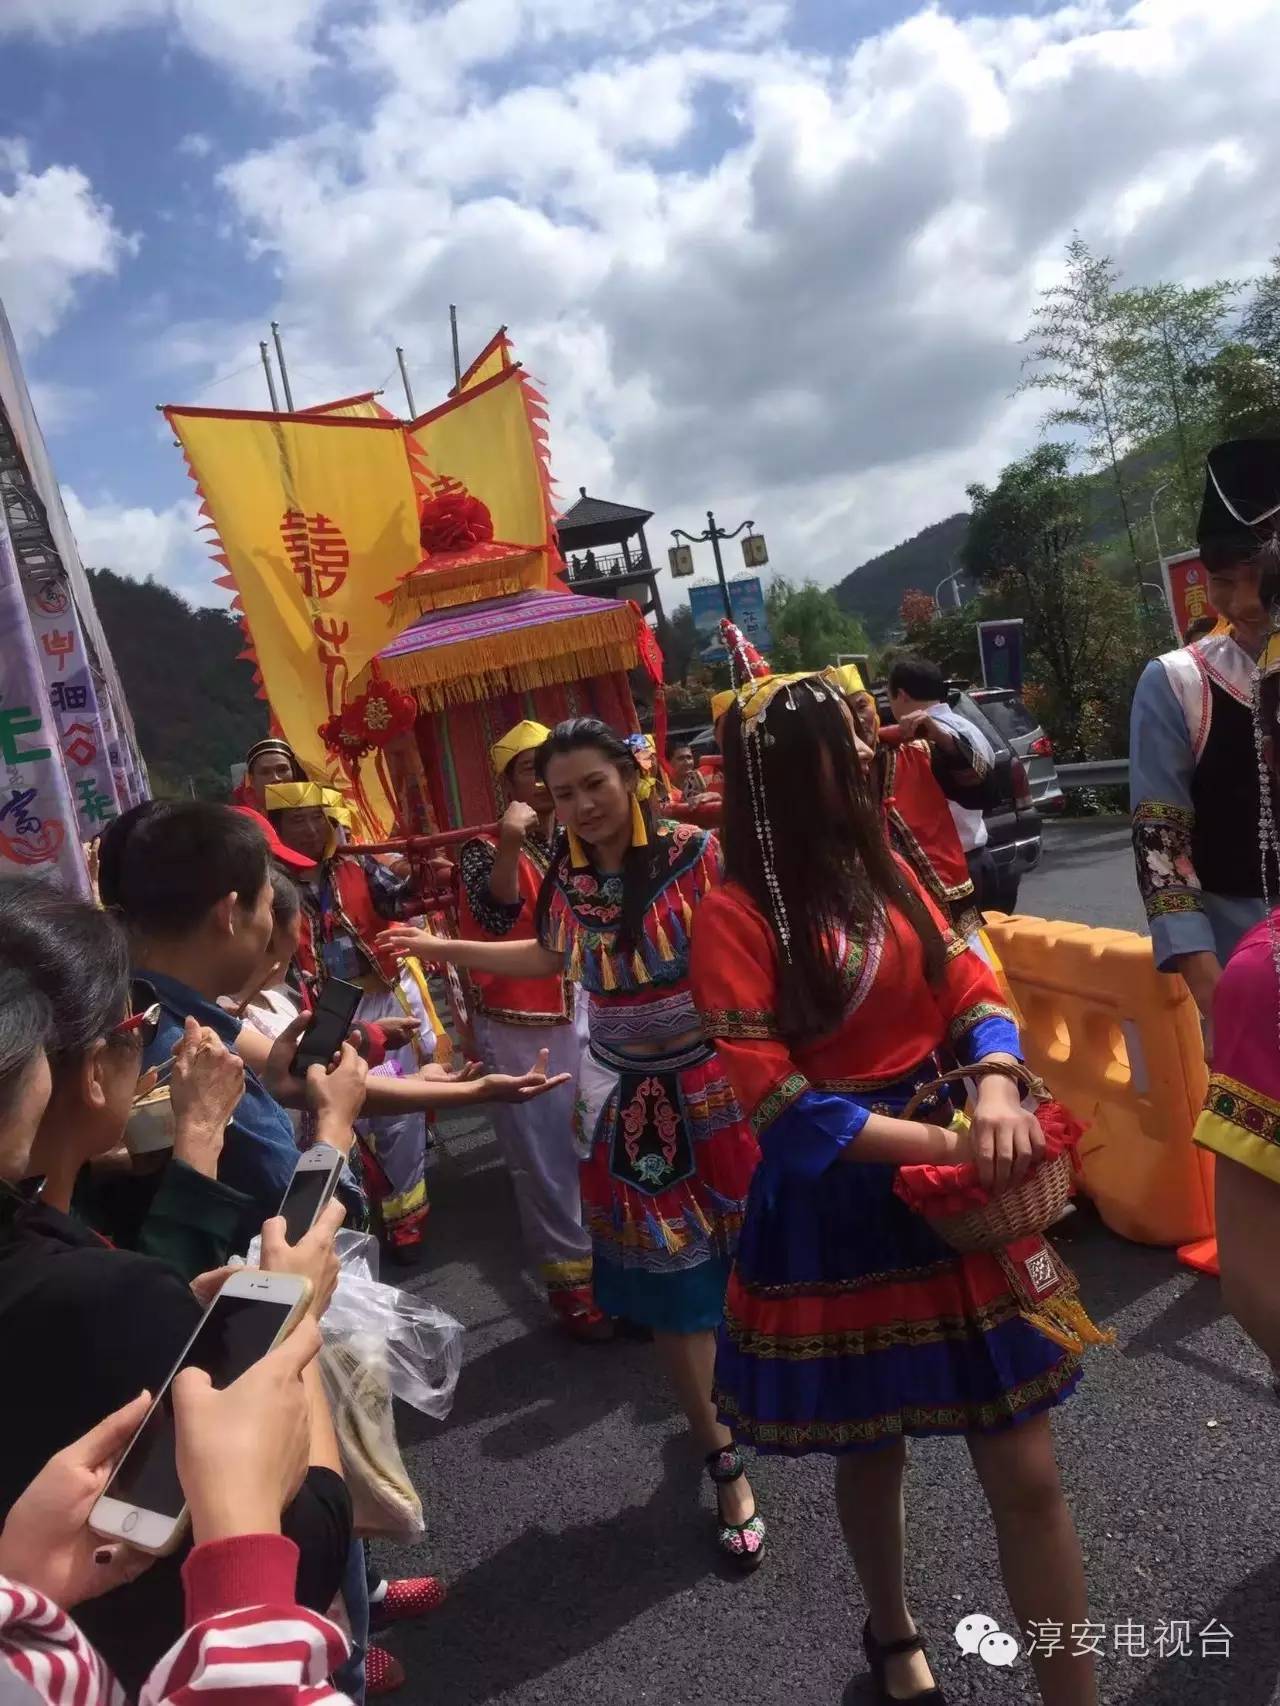 身穿畲族特色服装的畲族小伙和姑娘们载歌载舞,共同庆祝这个传统节日